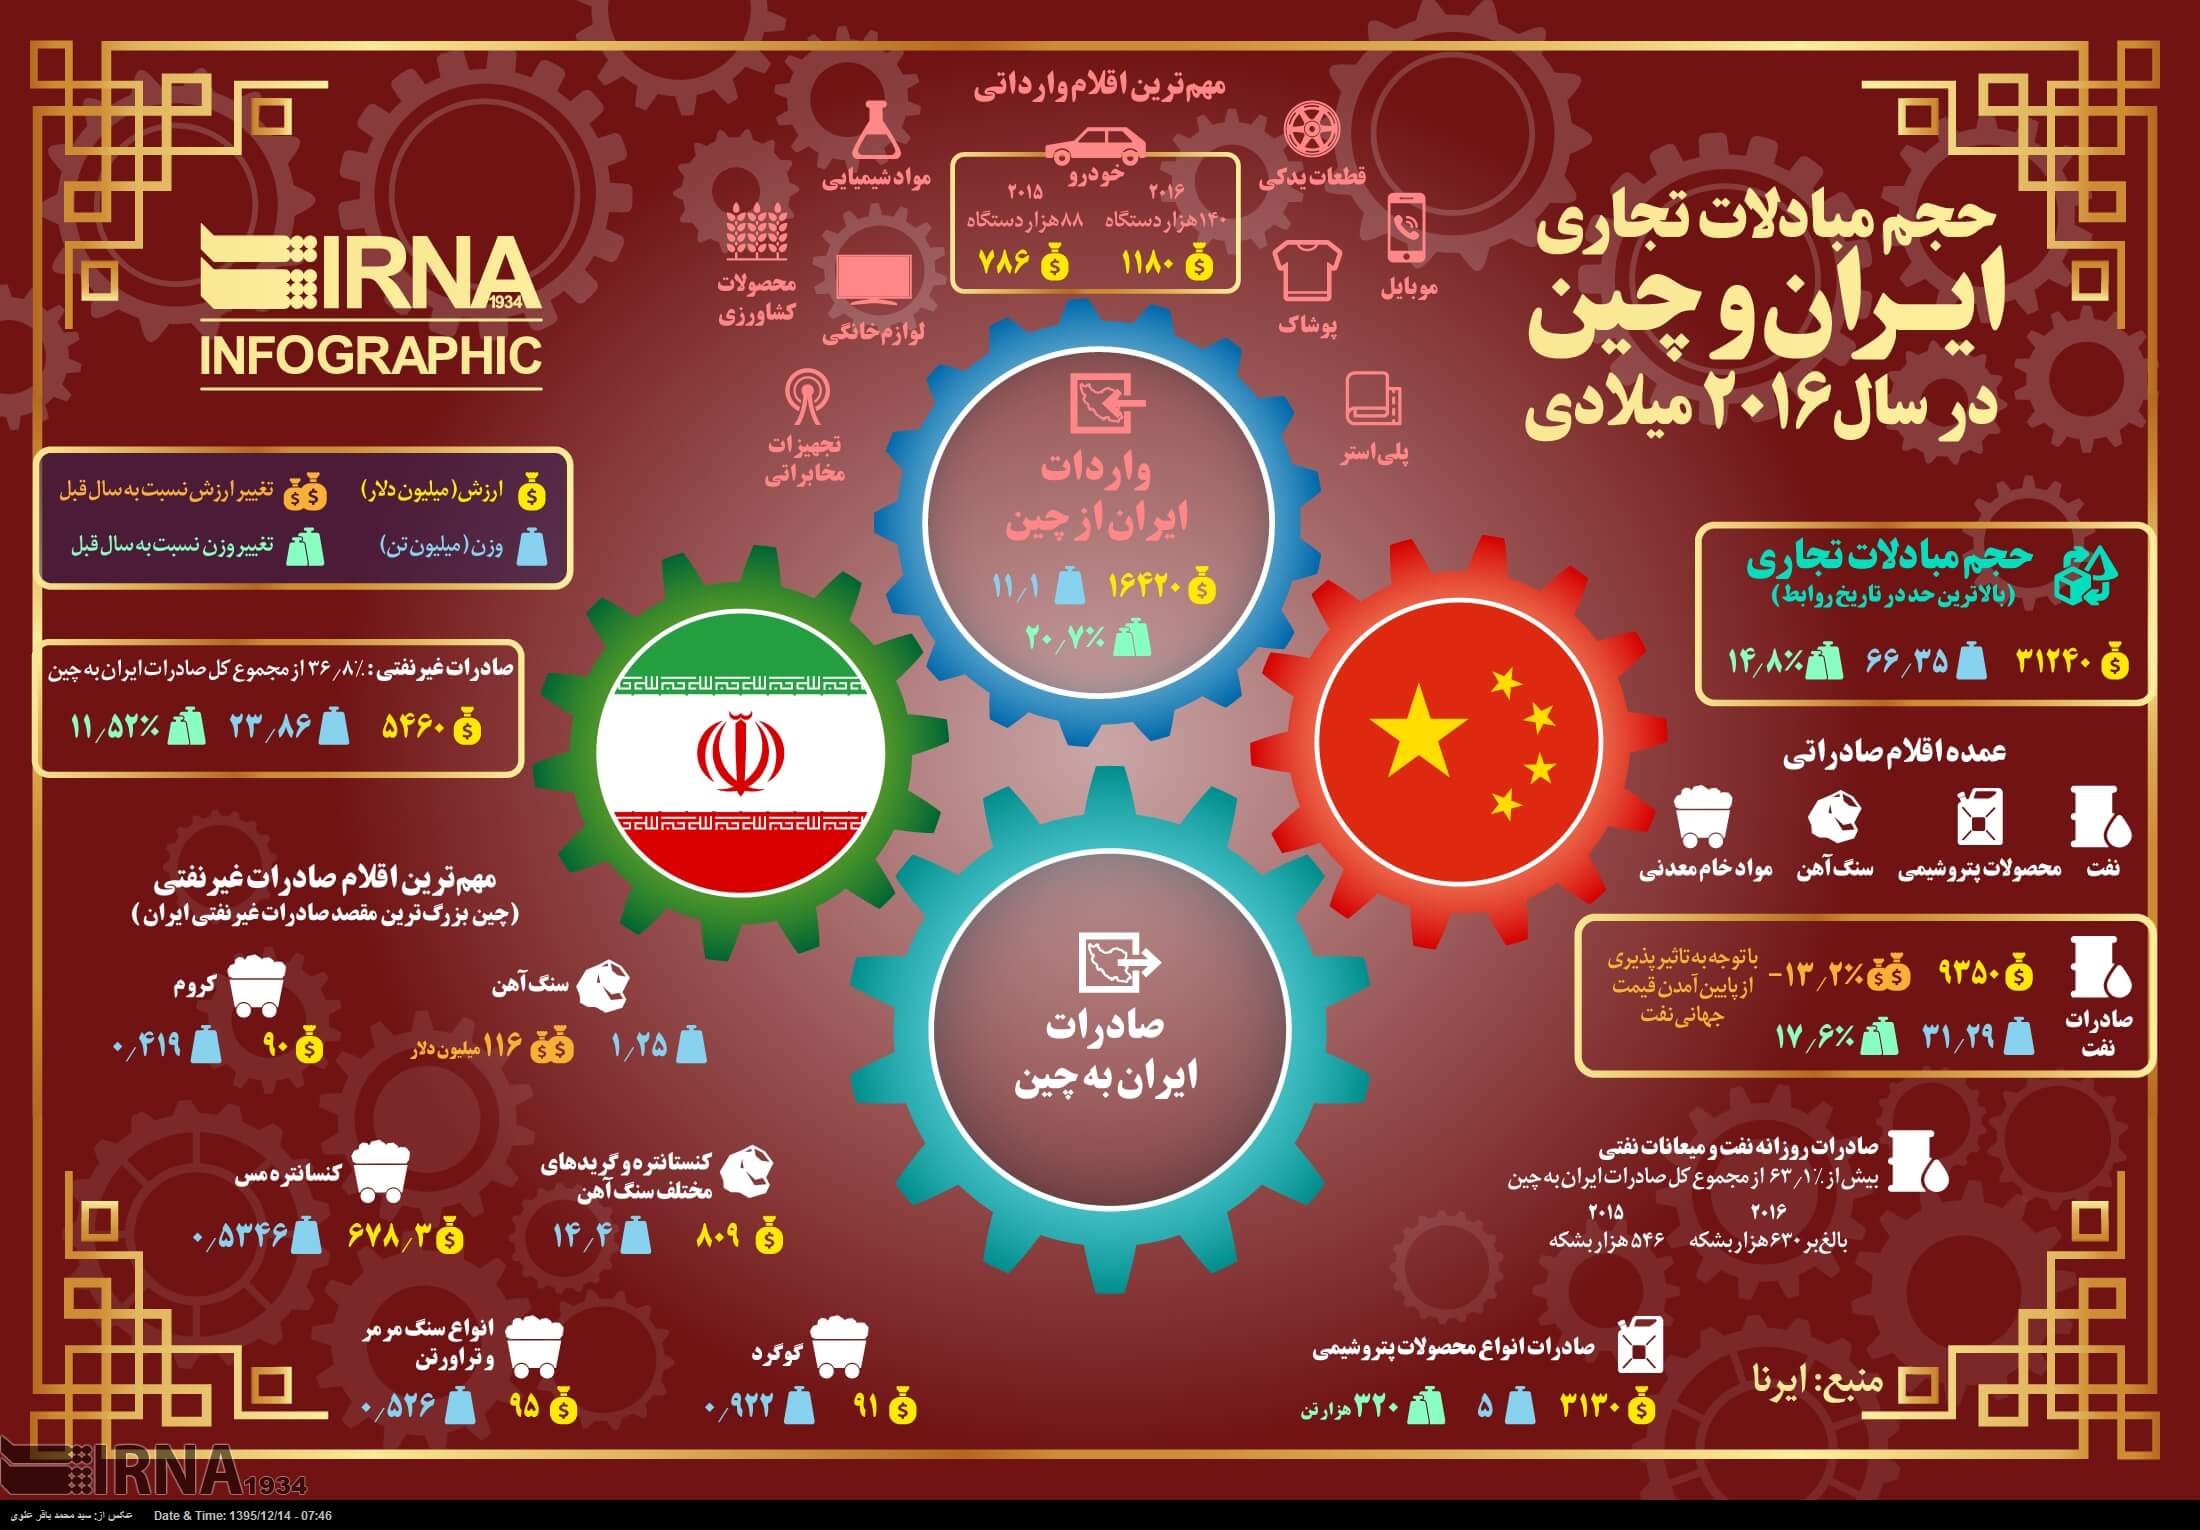 اینفوگراف حجم مبادلات تجاری ایران و چین در سال 2016